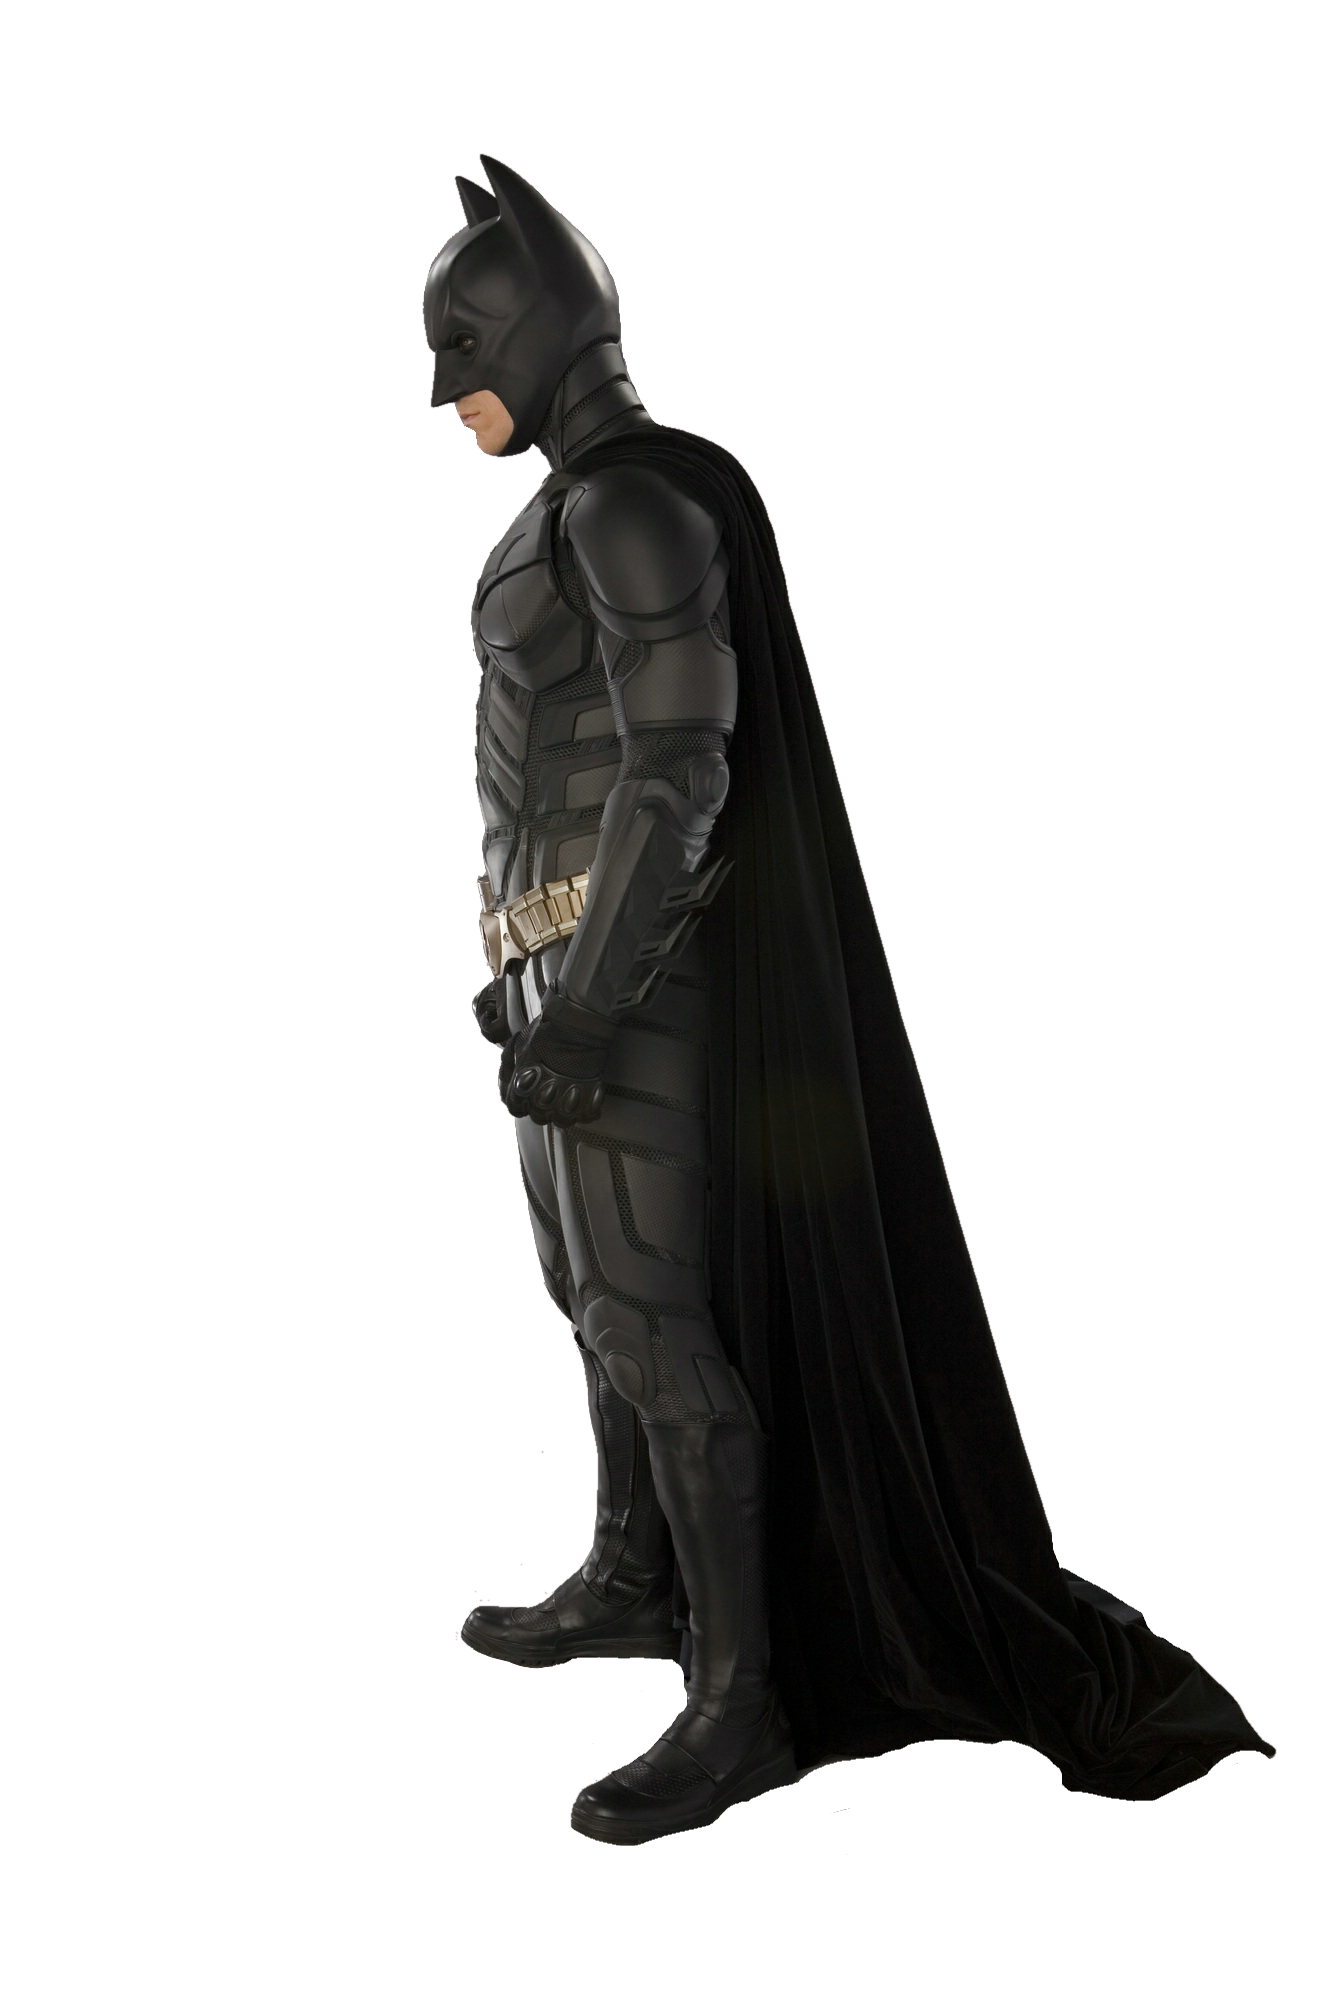 Imagen de fondo oscuro de Knight Batman PNG